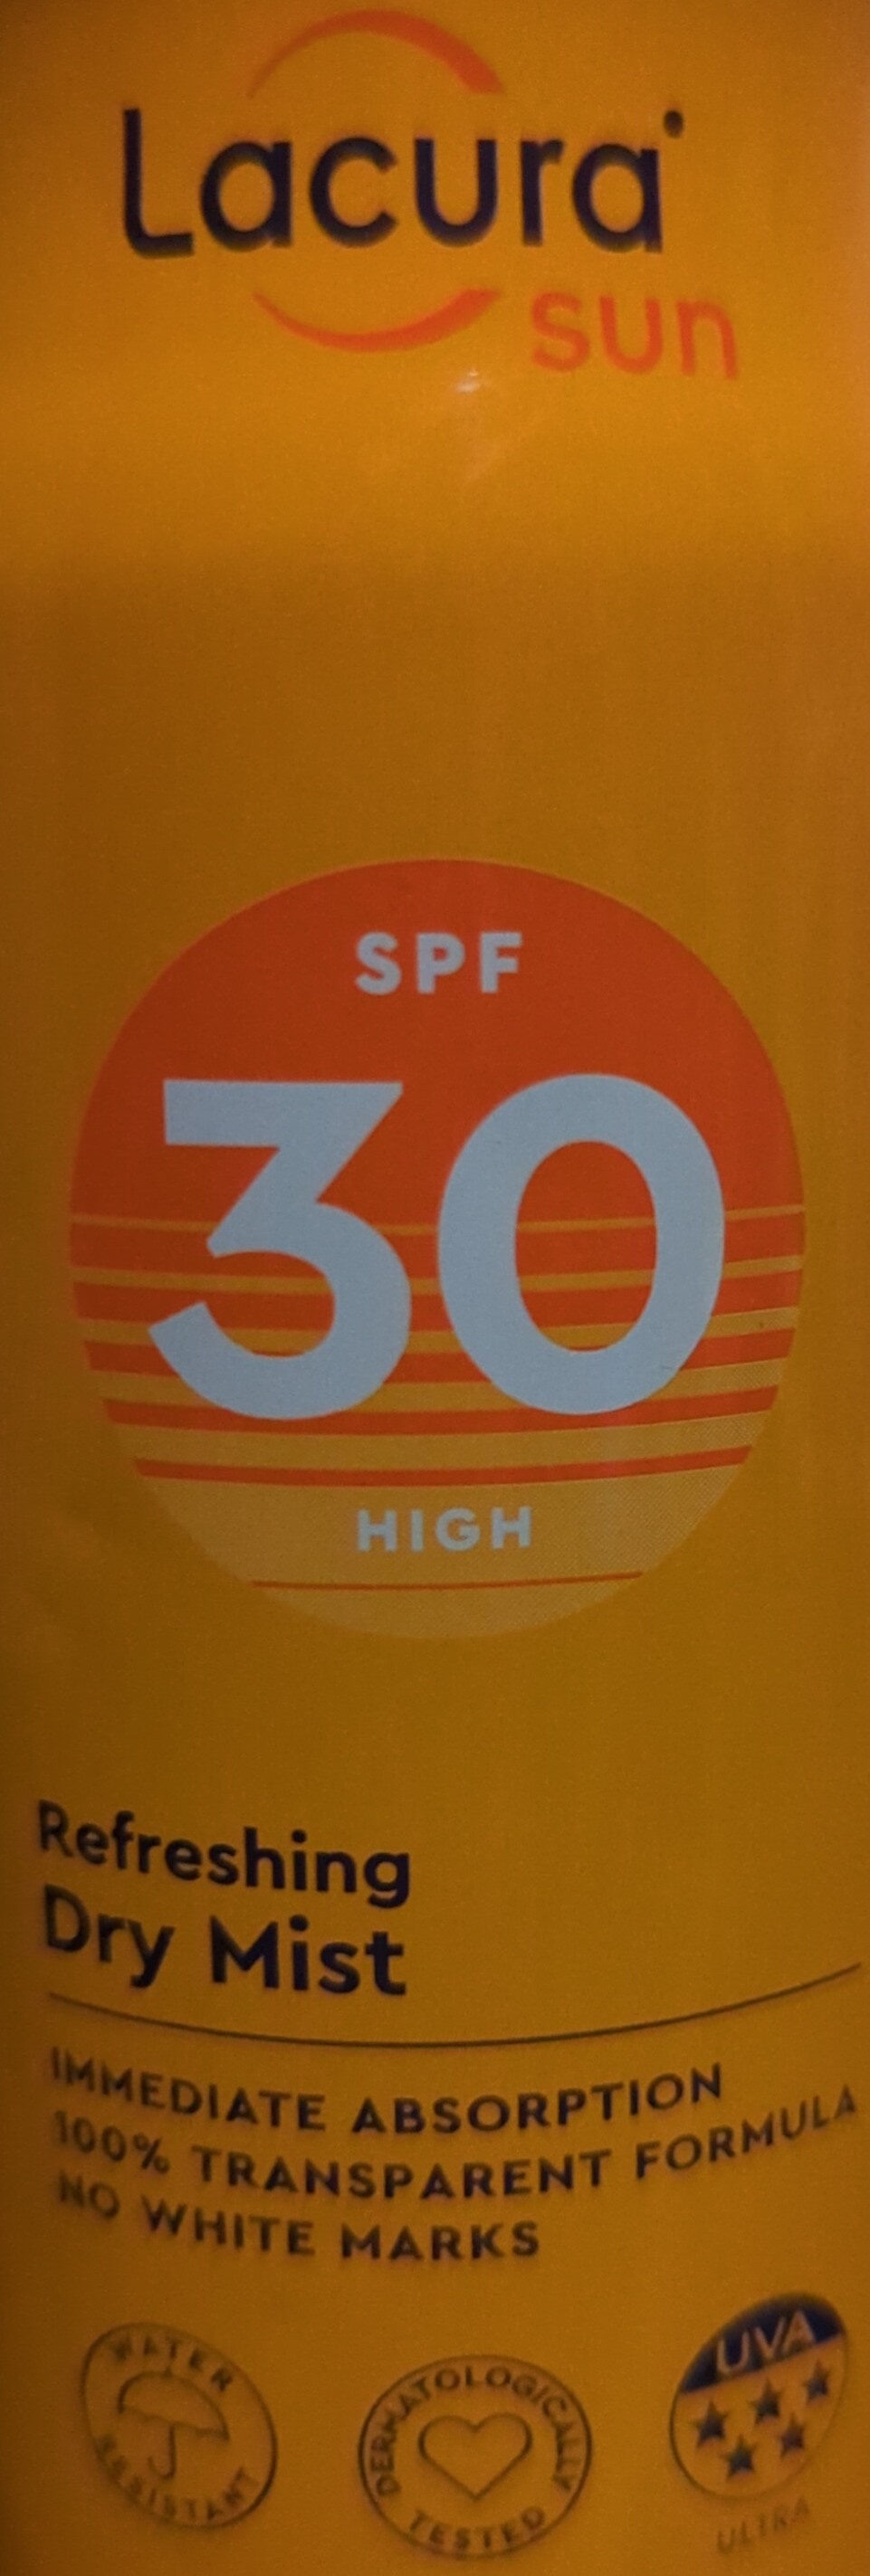 SPF 30 High, Refreshing Dry Mist - Produit - en